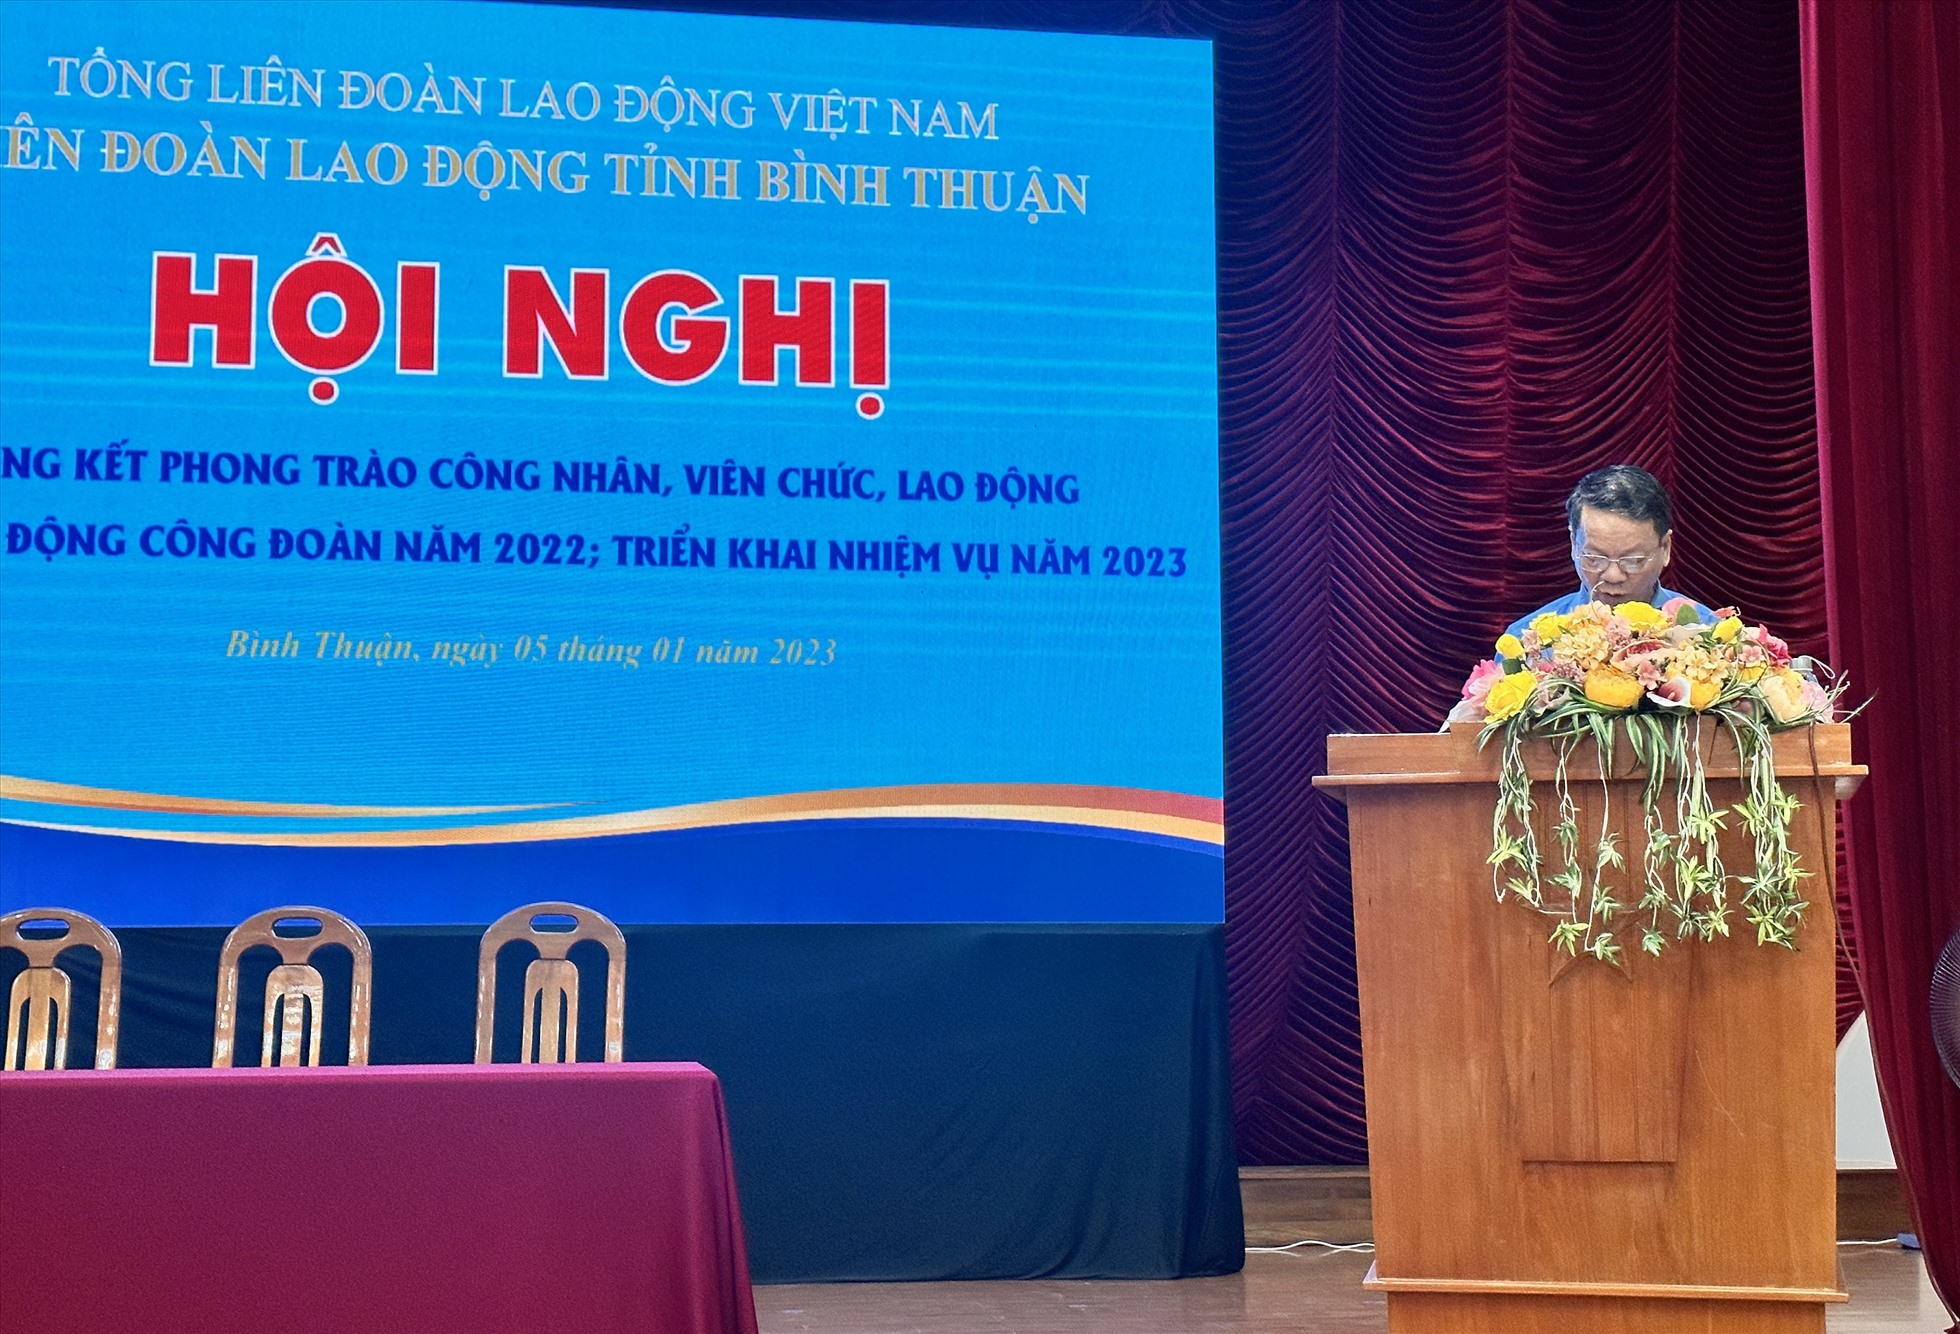 Đồng chí Nguyễn Xuân Phối, chủ tịch LĐLĐ tỉnh Bình Thuận phát động phong trào thi đua năm 2023. Ảnh: Duy Tuấn